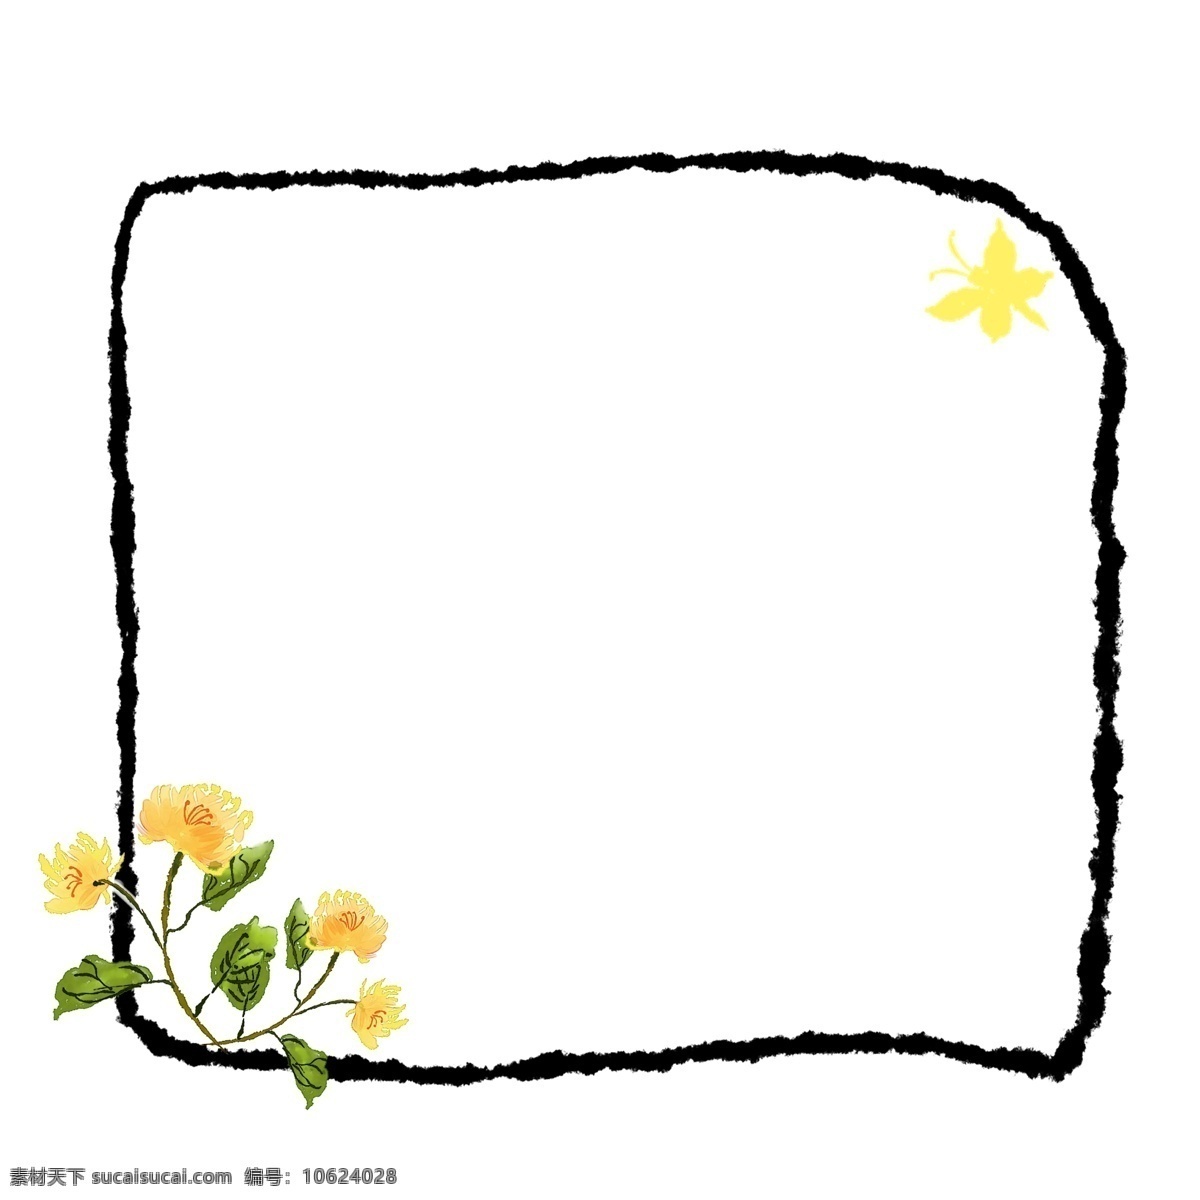 水墨 黄色 花朵 边框 黄色的花朵 卡通边框 水墨边框 花鸟边框 漂亮的边框 中国风边框 黑色的边框